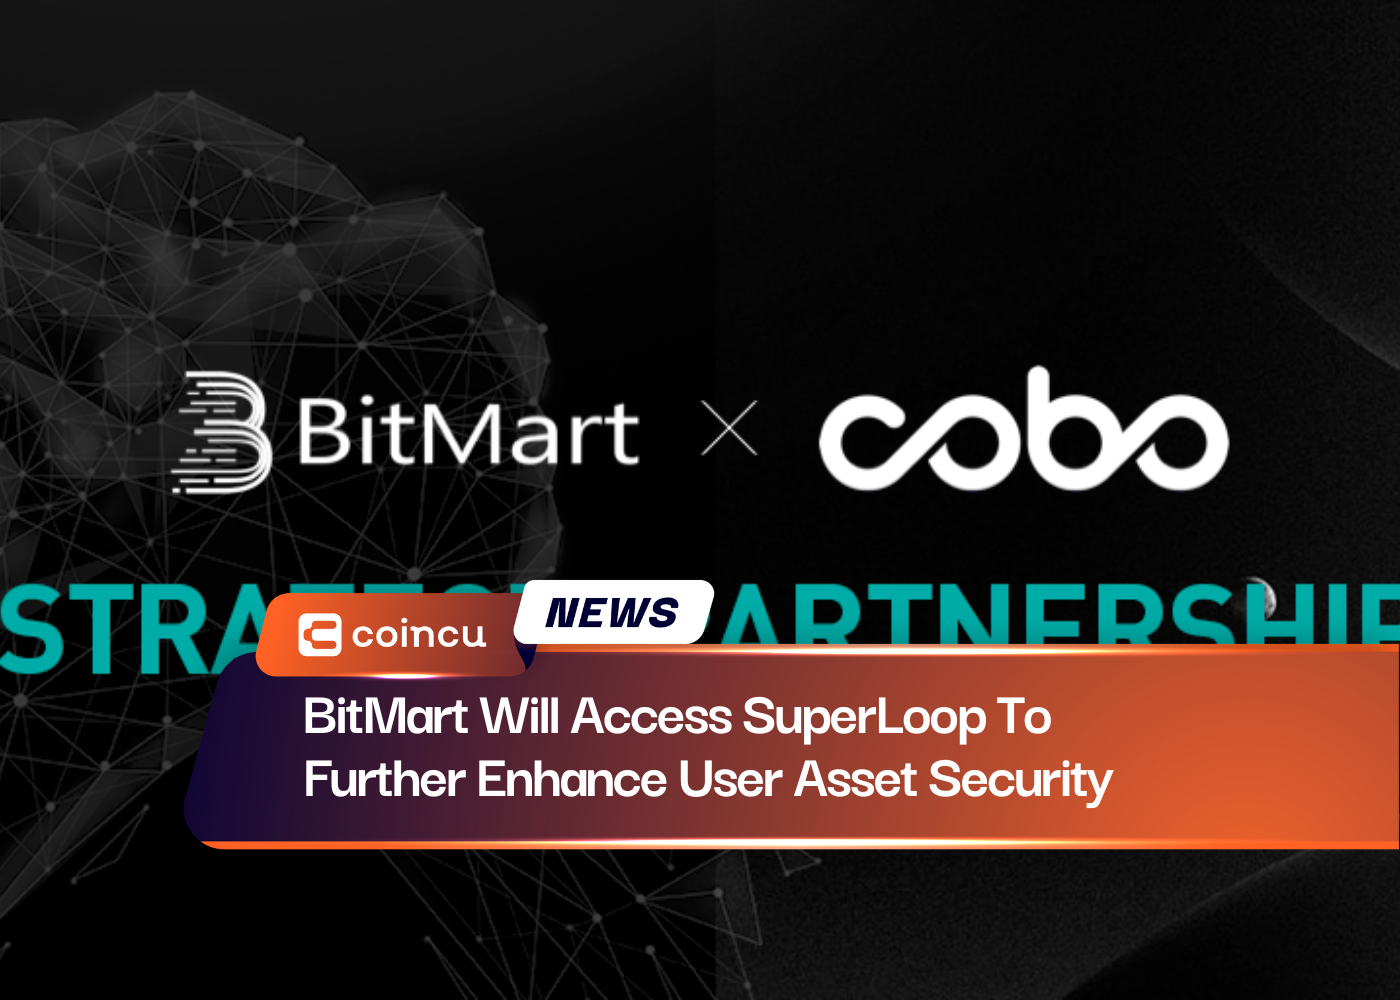 BitMart wird auf SuperLoop zugreifen, um die Sicherheit der Benutzerressourcen weiter zu verbessern